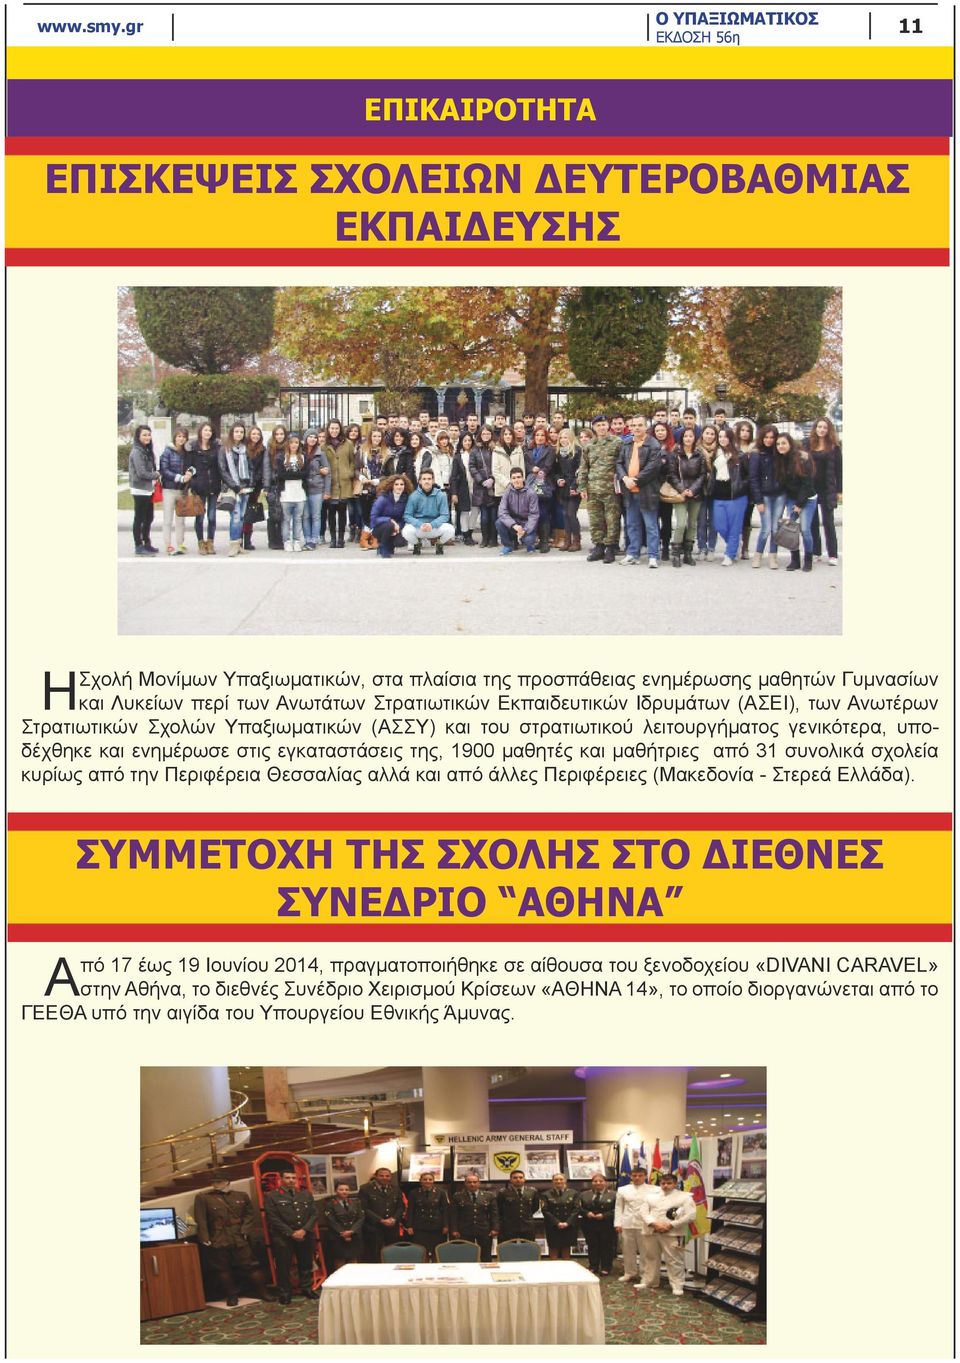 από 31 συνολικά σχολεία κυρίως από την Περιφέρεια Θεσσαλίας αλλά και από άλλες Περιφέρειες (Μακεδονία - Στερεά Ελλάδα).